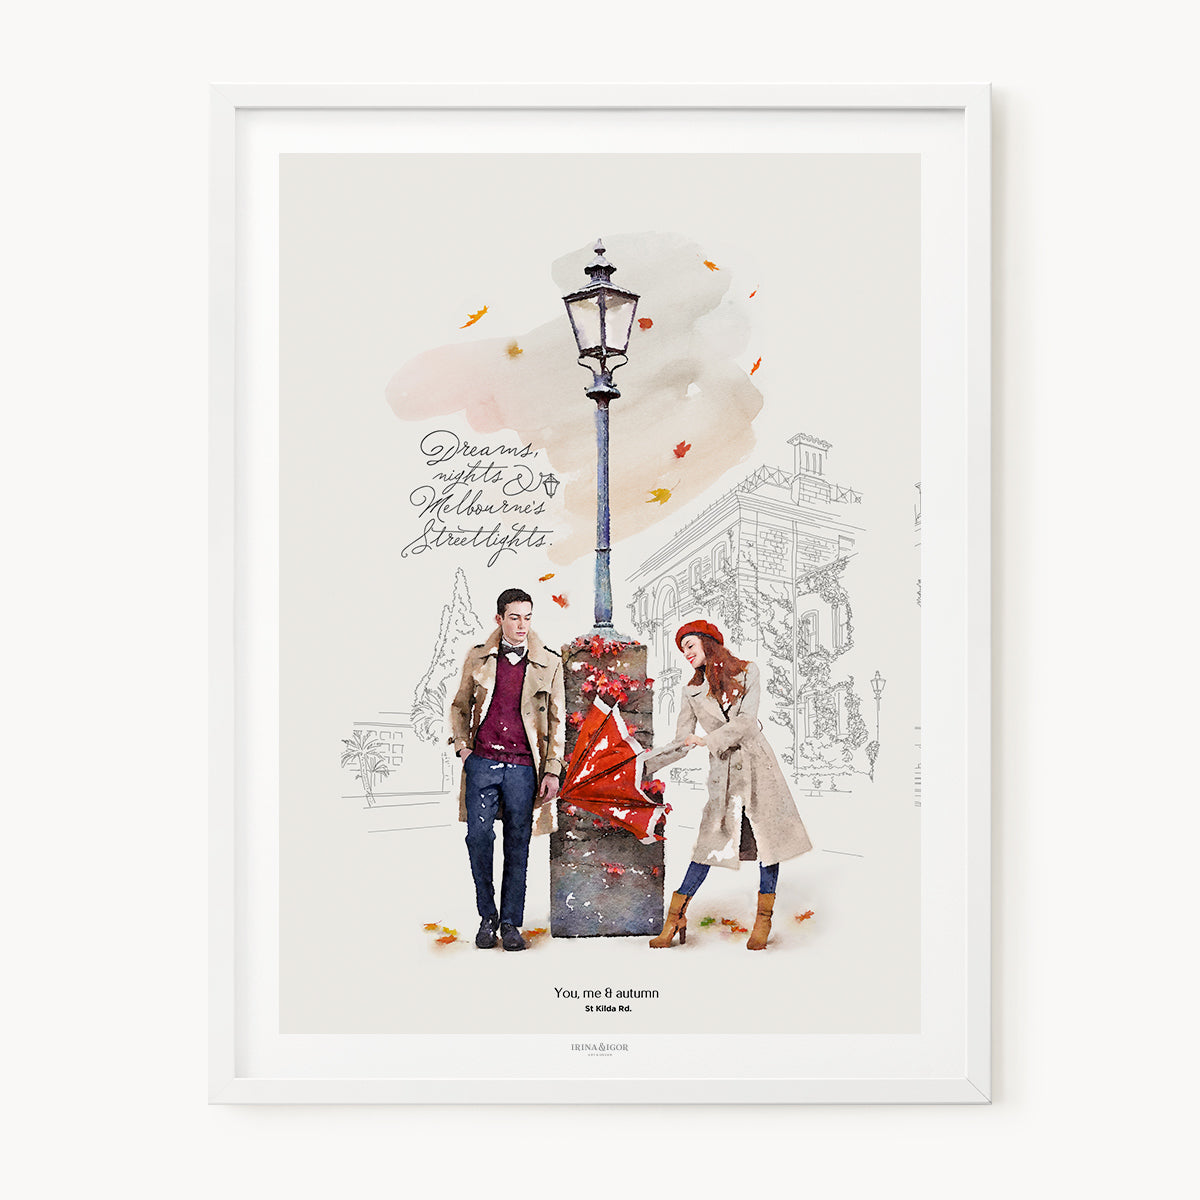 You, Me & Autumn | St Kilda Rd.